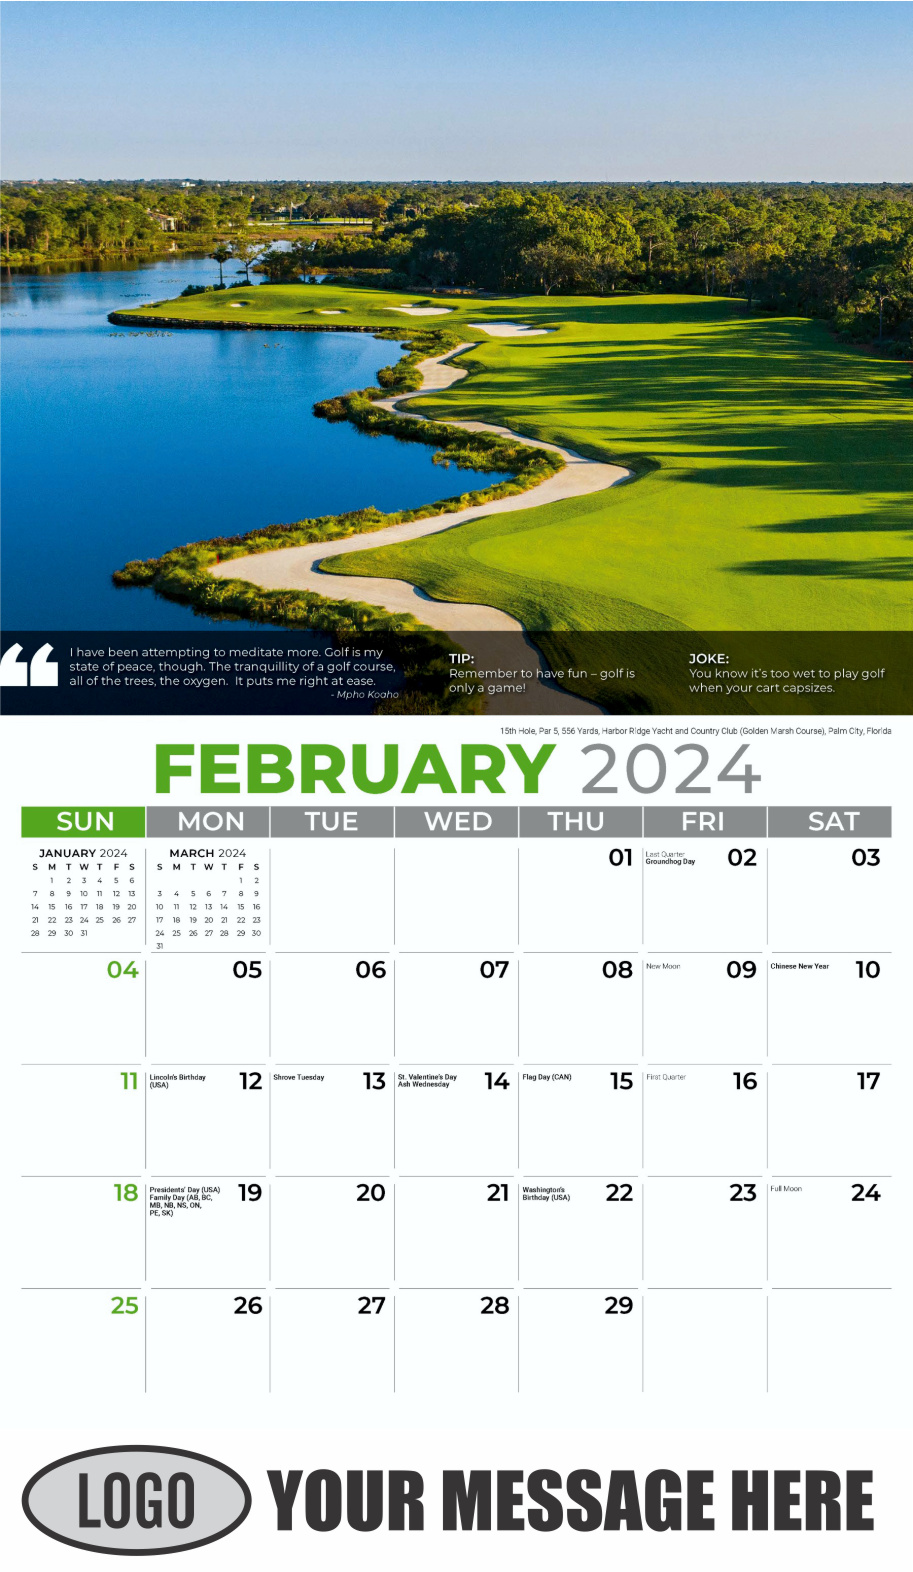 Golf Tips 2024 Business Promo Calendar - February